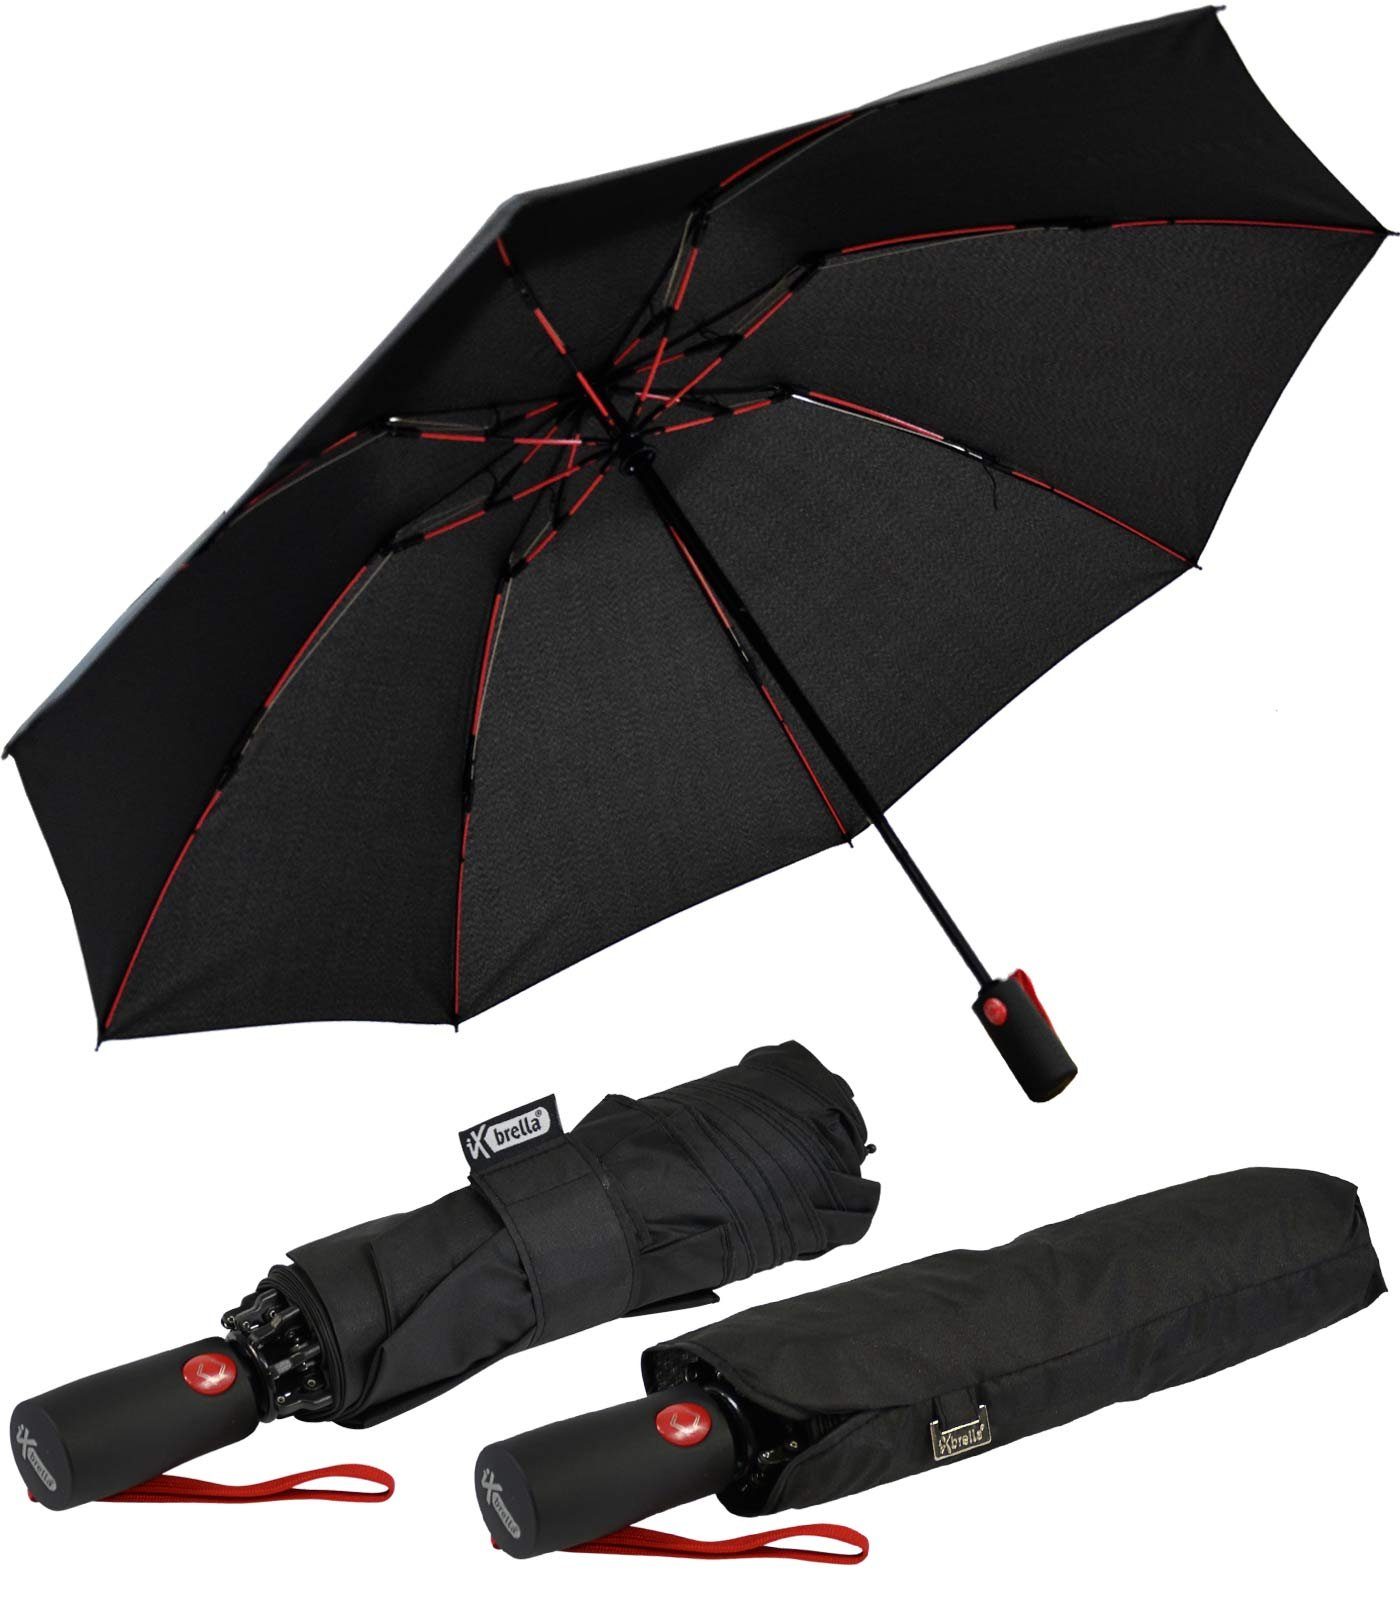 schwarz-rot umgekehrt Taschenregenschirm stabilen öffnender iX-brella Reverse Fiberglas-Automatiksch, bunten Speichen mit